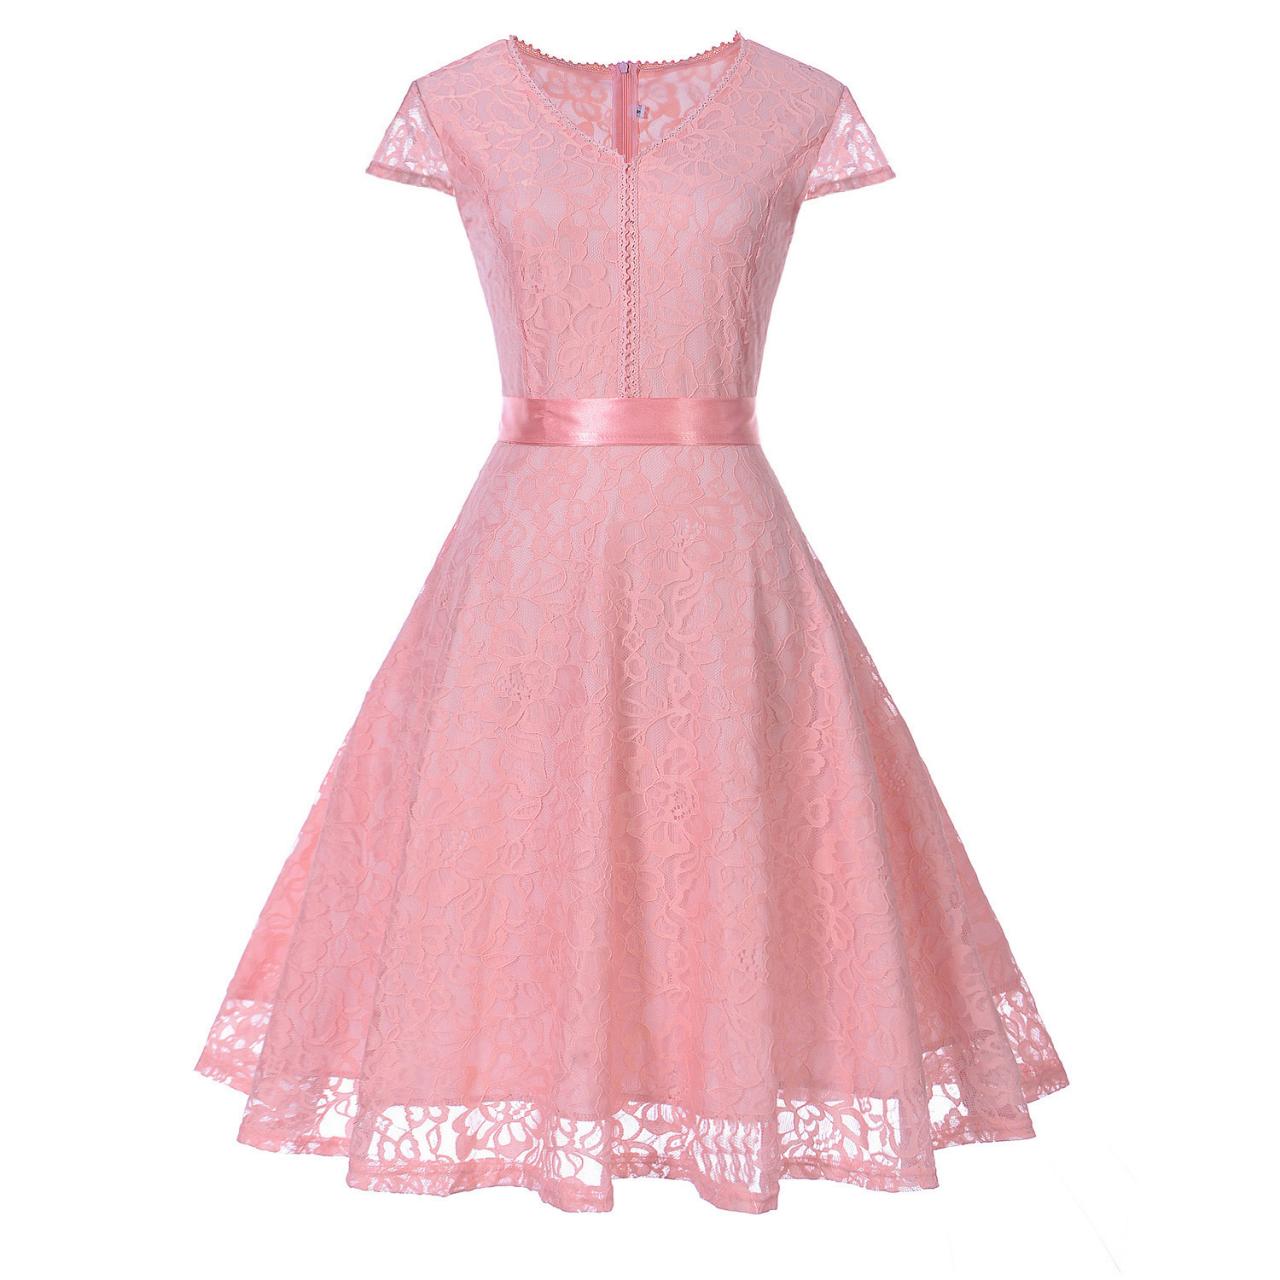 Elegant V Neck Short Sleeve Lace Dress With Belt - Pink